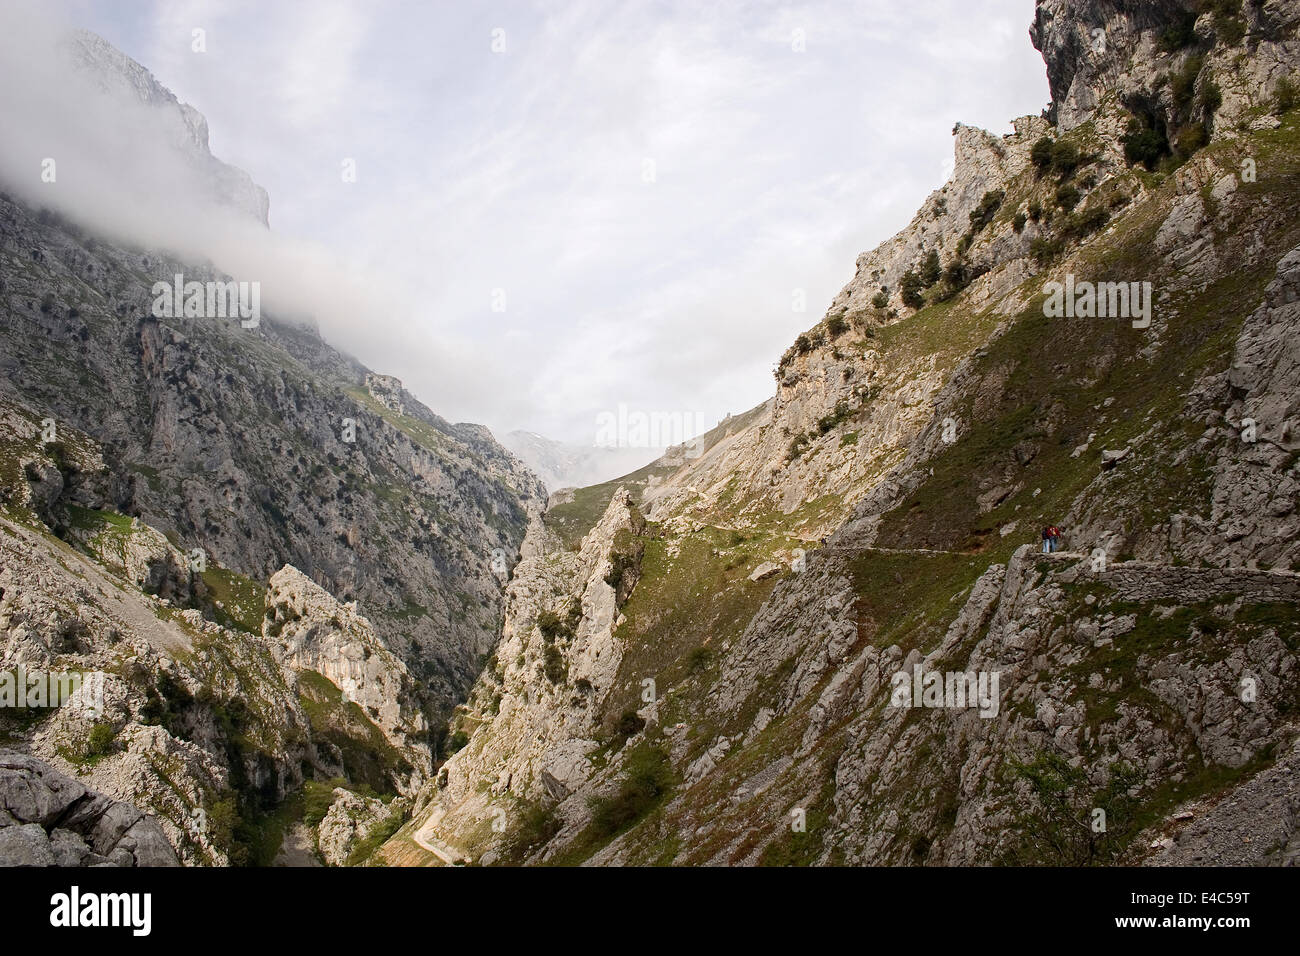 Cares river gorge, Picos de Europa mountain, Cantabria and Asturias province, Spain Stock Photo